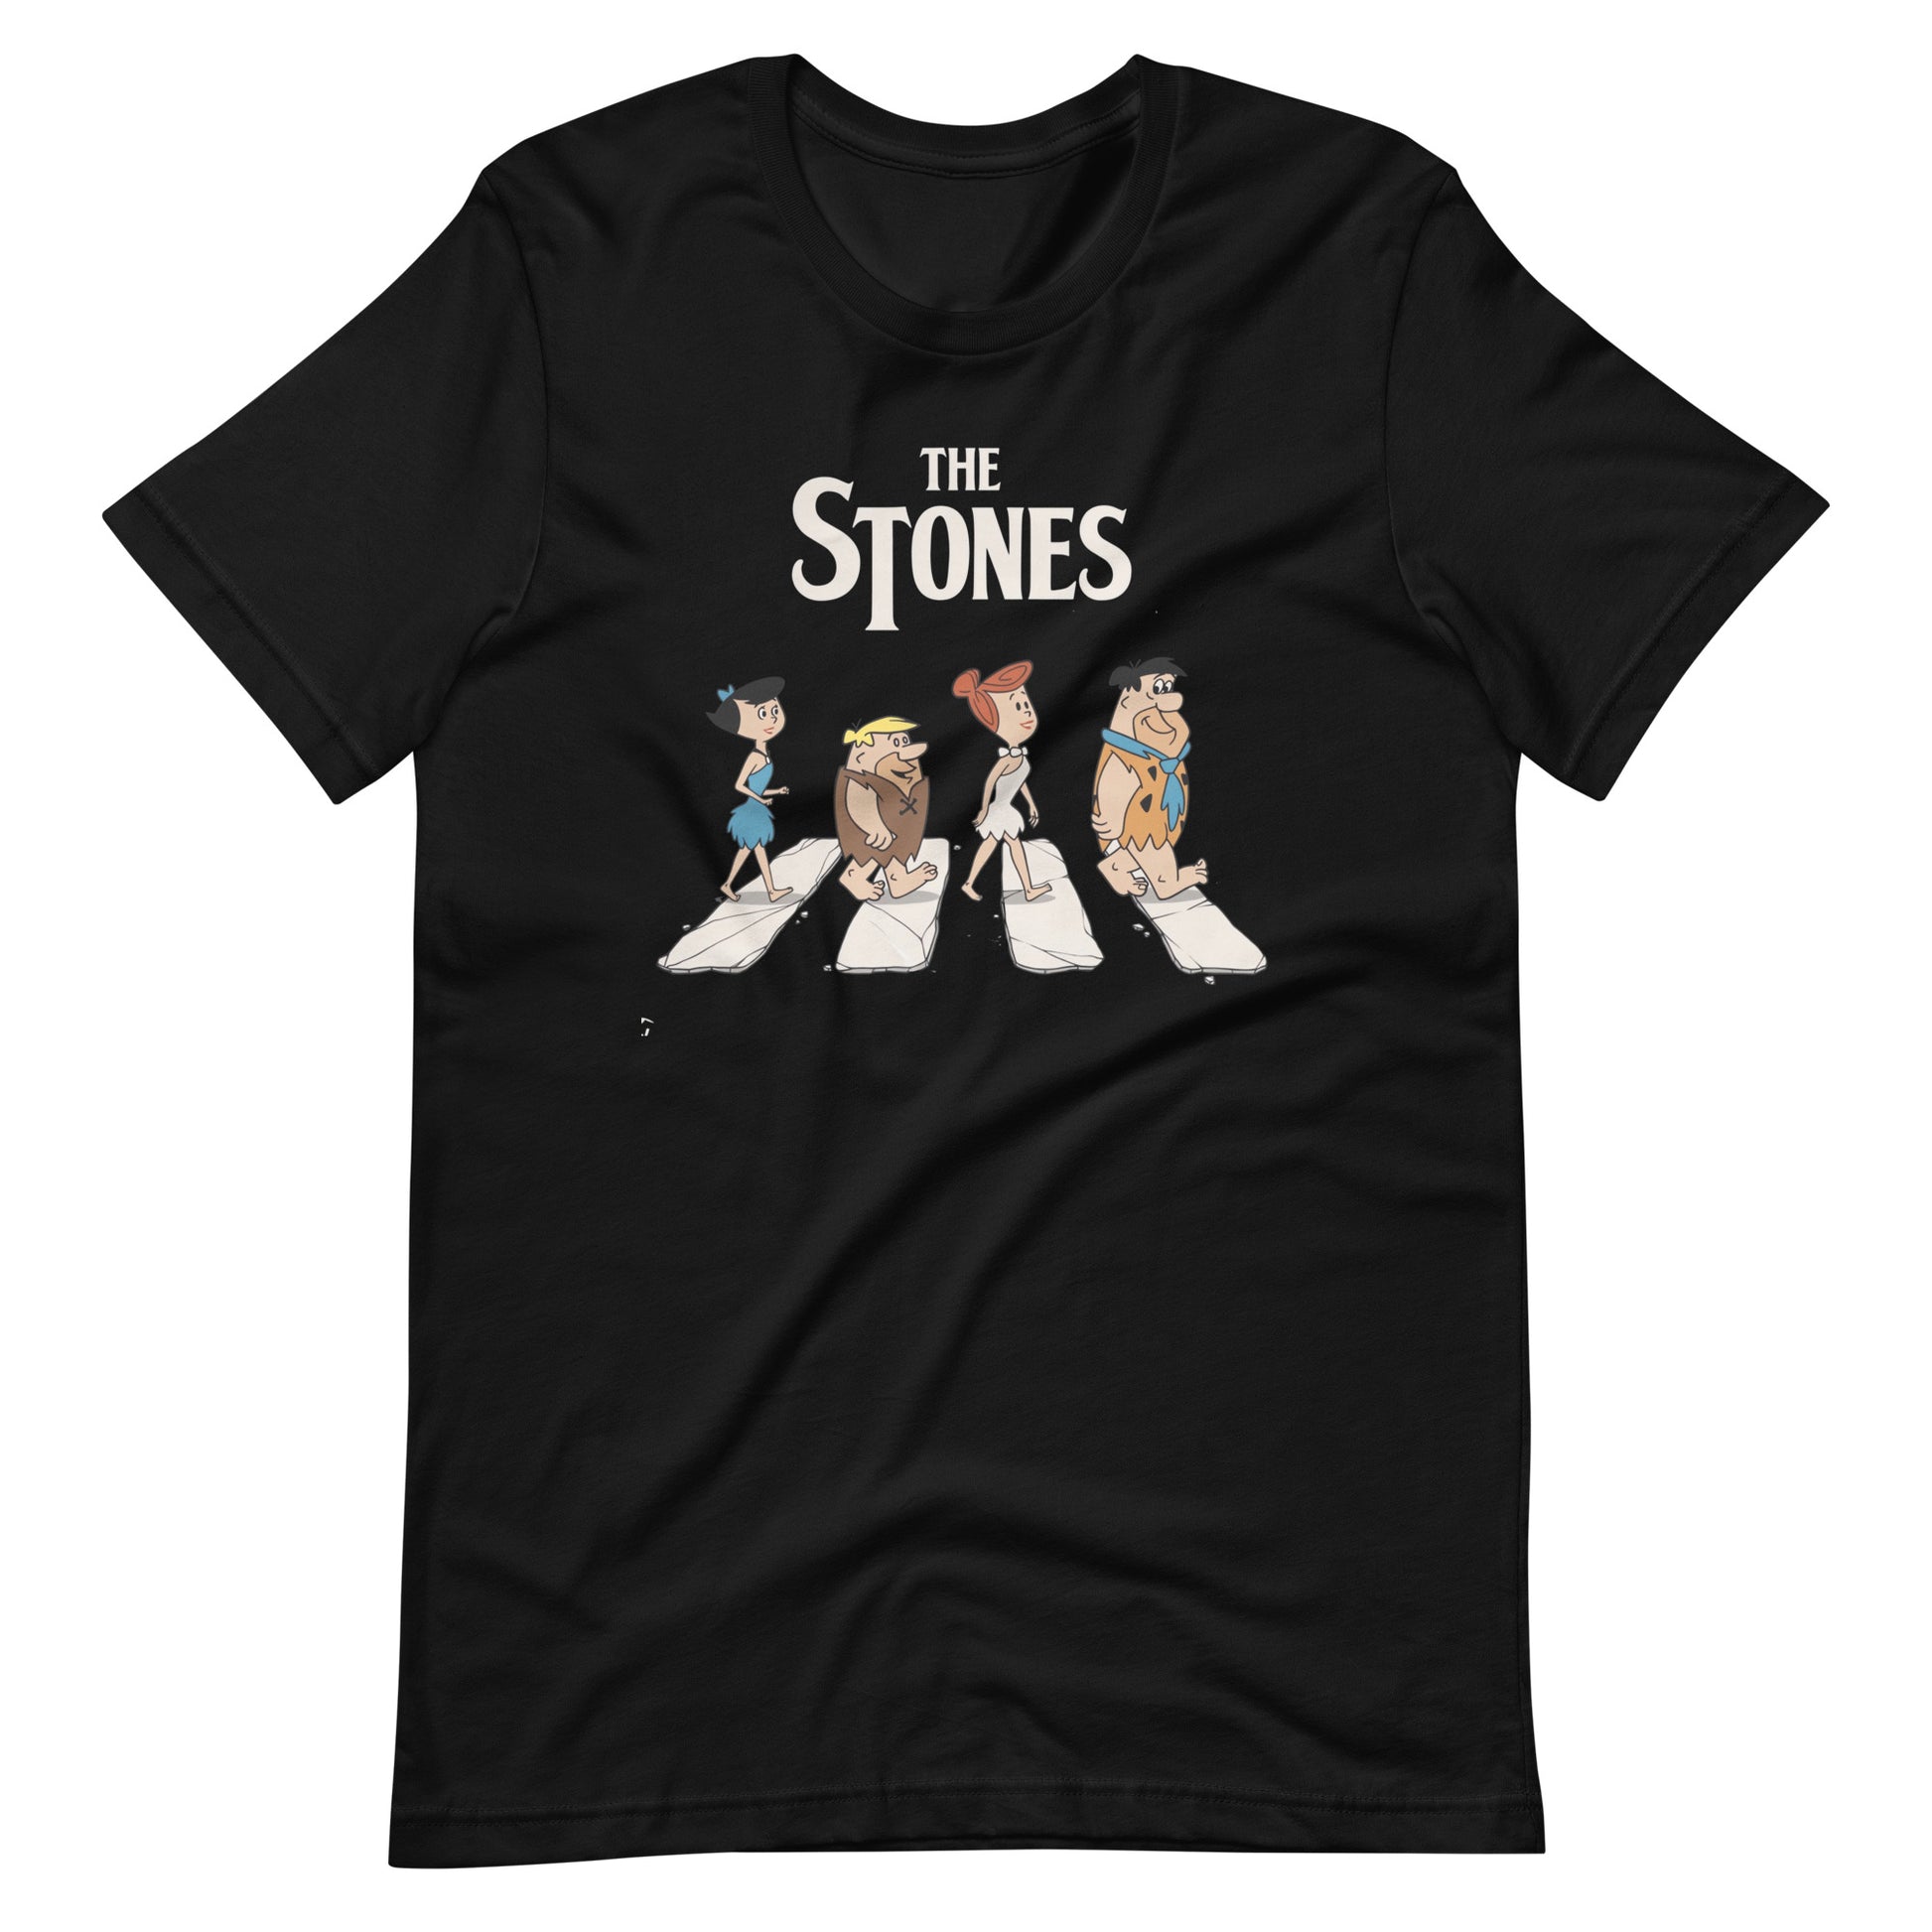 ¡Compra el mejor merchandising en Superstar! Encuentra diseños únicos y de alta calidad, Playera The Stones